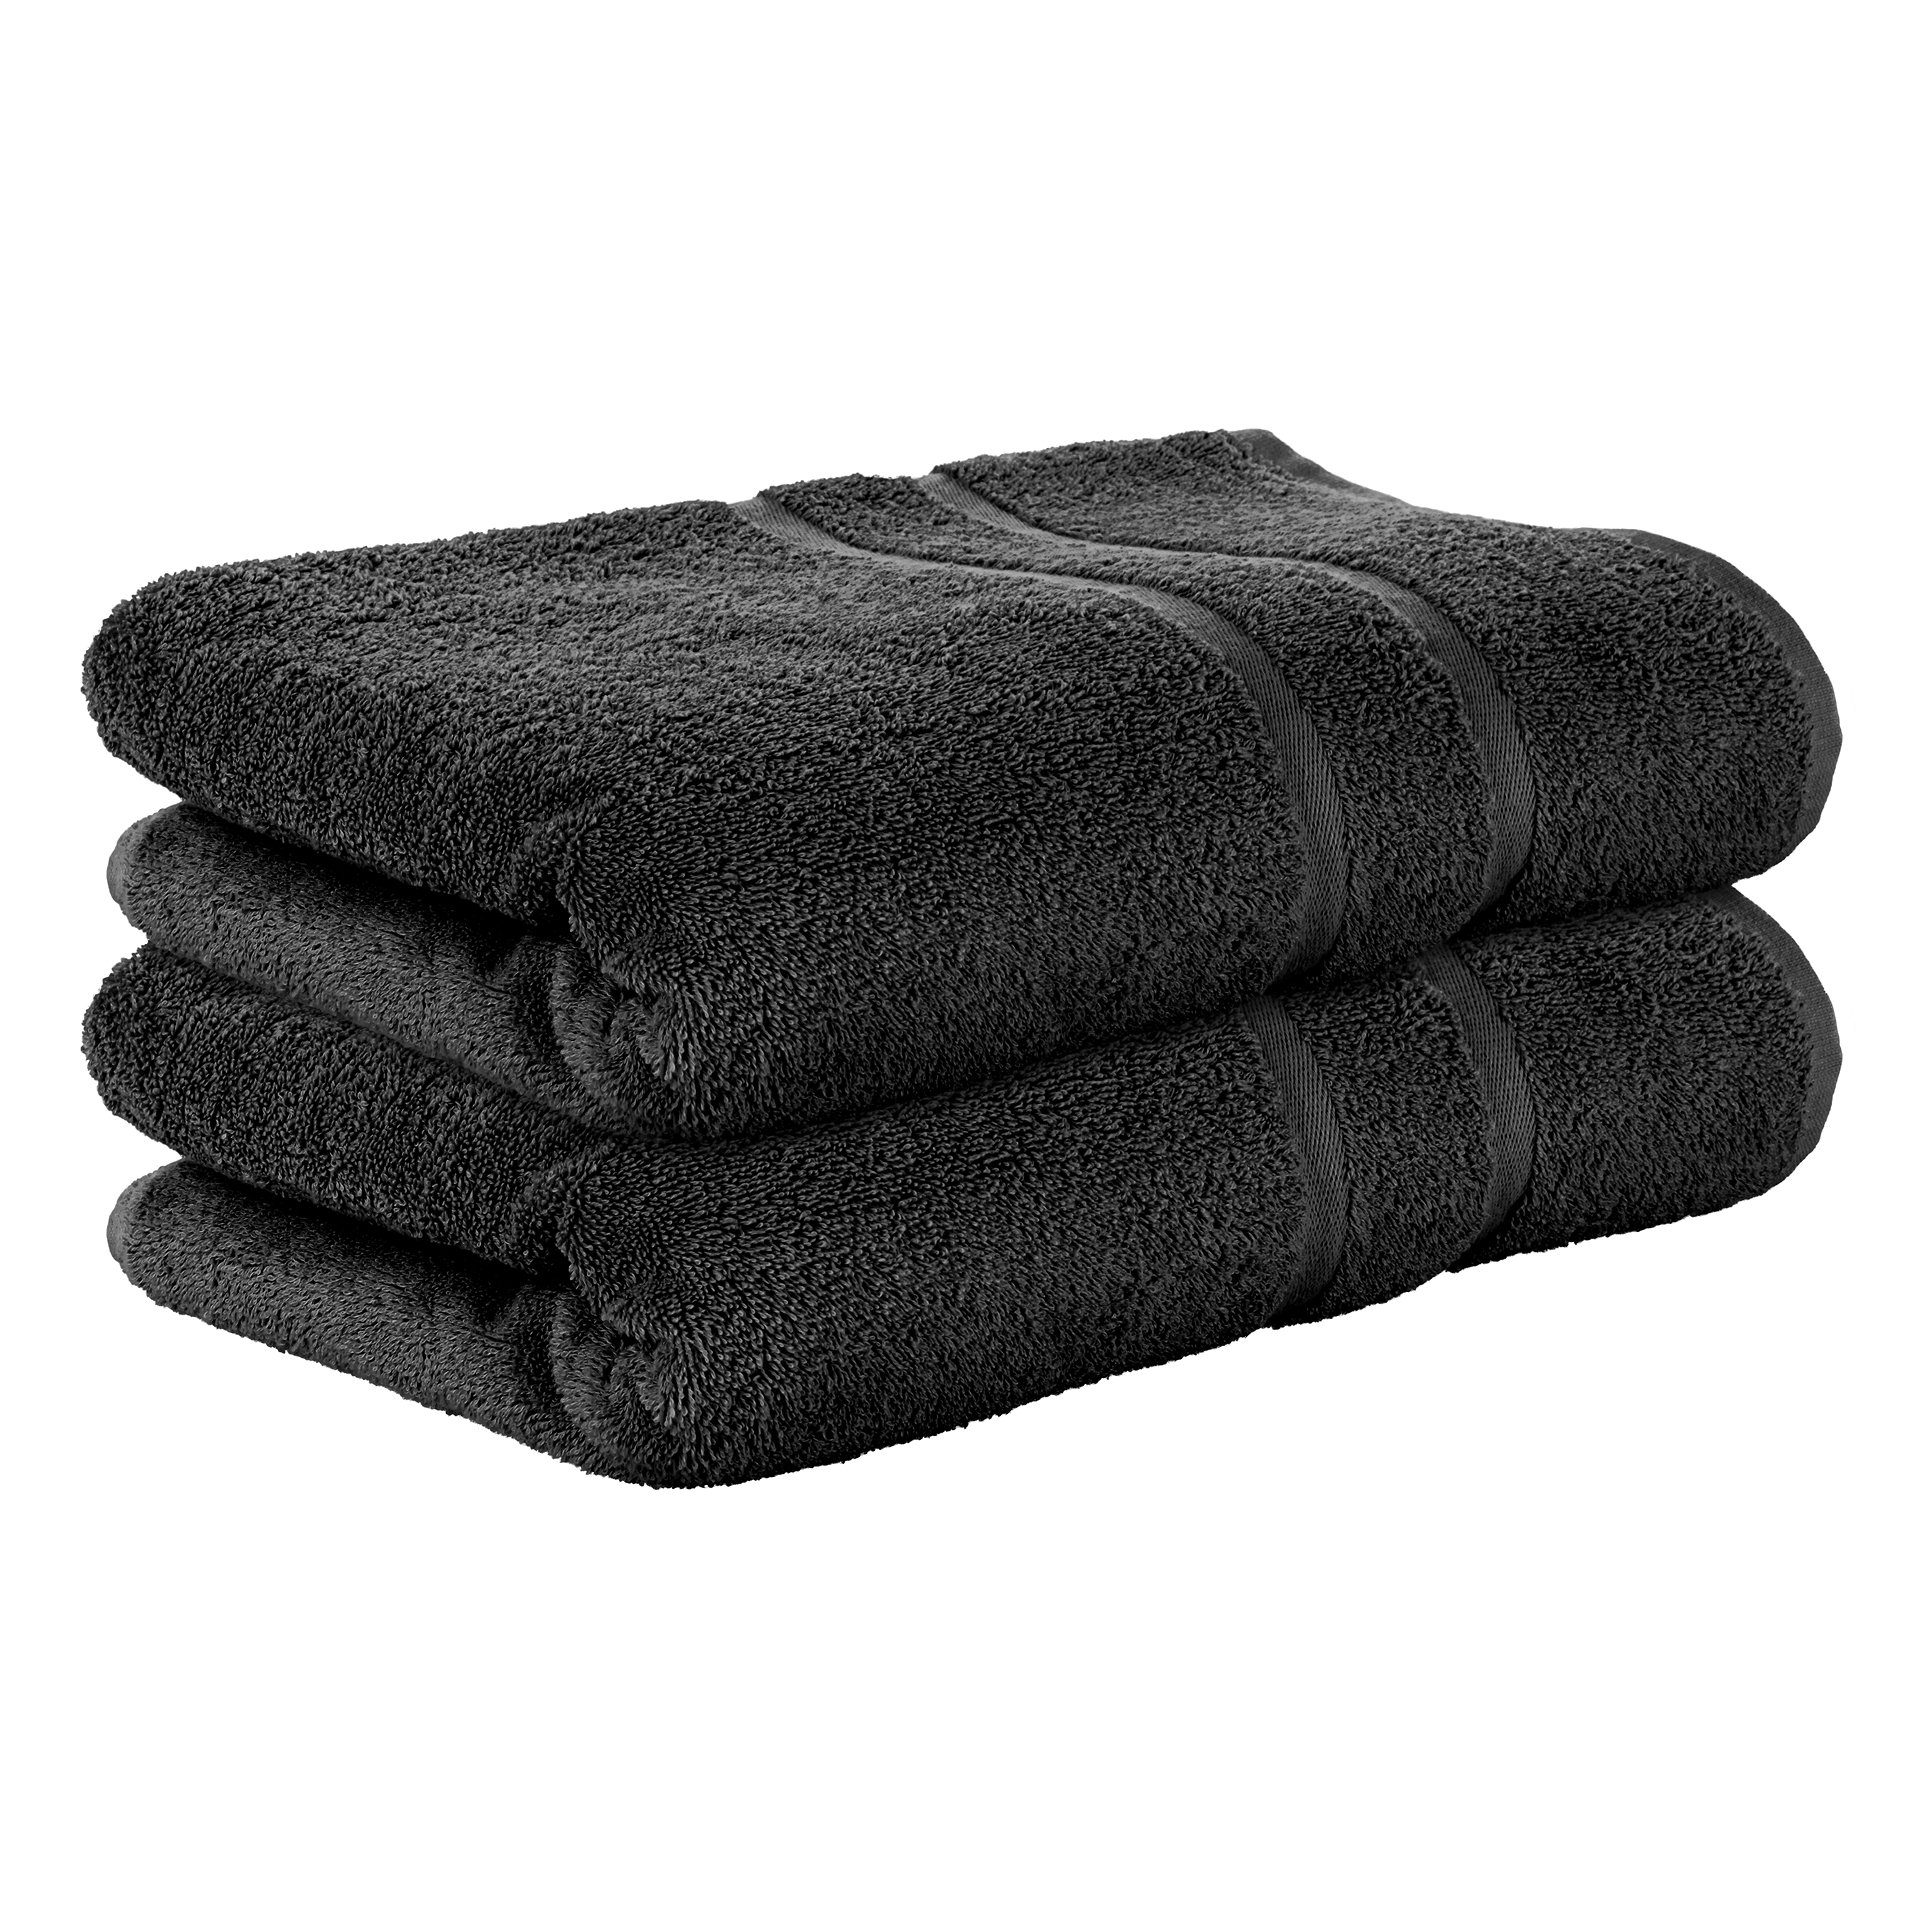 StickandShine Handtuch 2er Set Premium Frottee Handtuch 50x100 cm in 500g/m² aus 100% Baumwolle (2 Stück), 100% Baumwolle 500GSM Frottee Schwarz